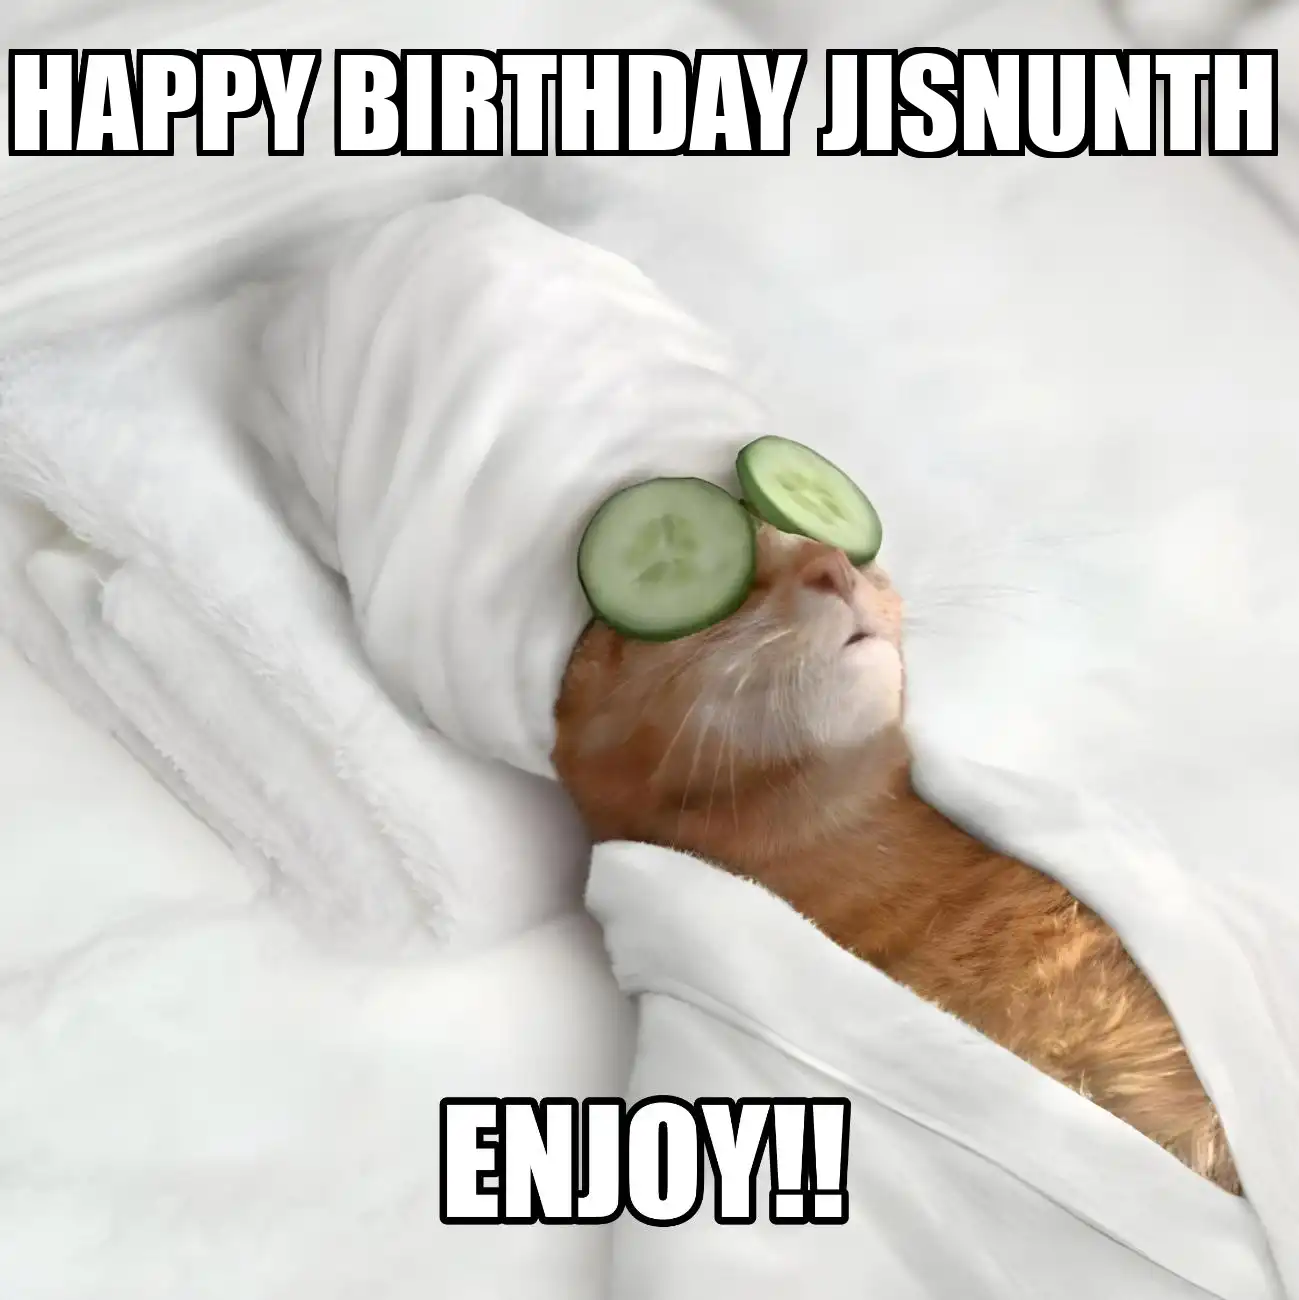 Happy Birthday Jisnunth Enjoy Cat Meme